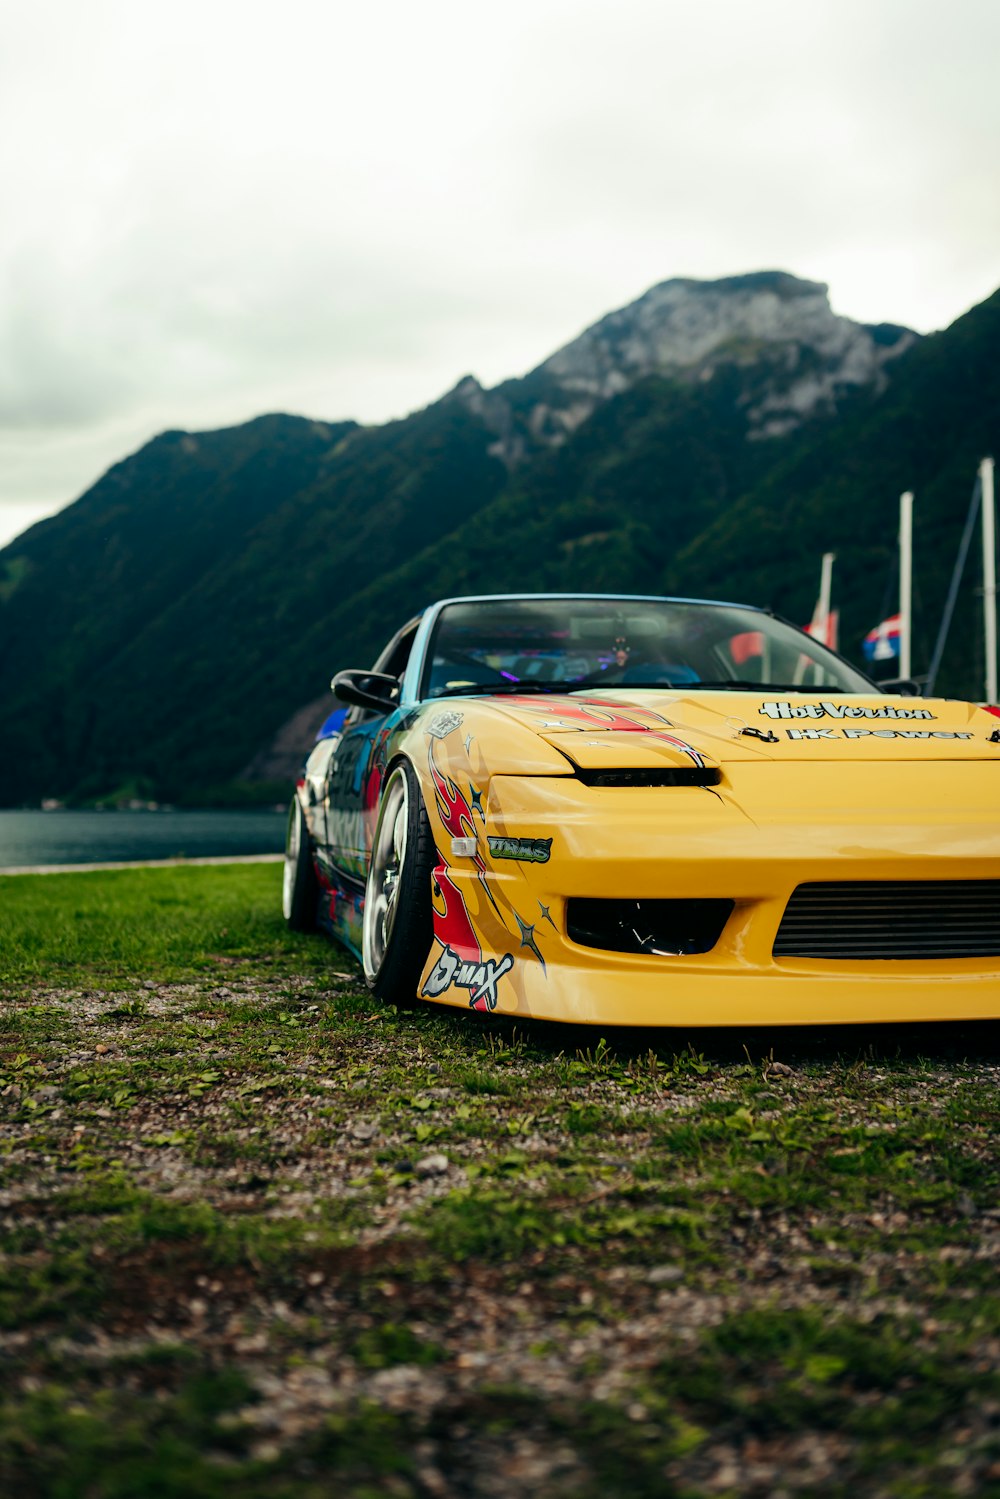 Ein gelber Sportwagen parkt vor einem Berg